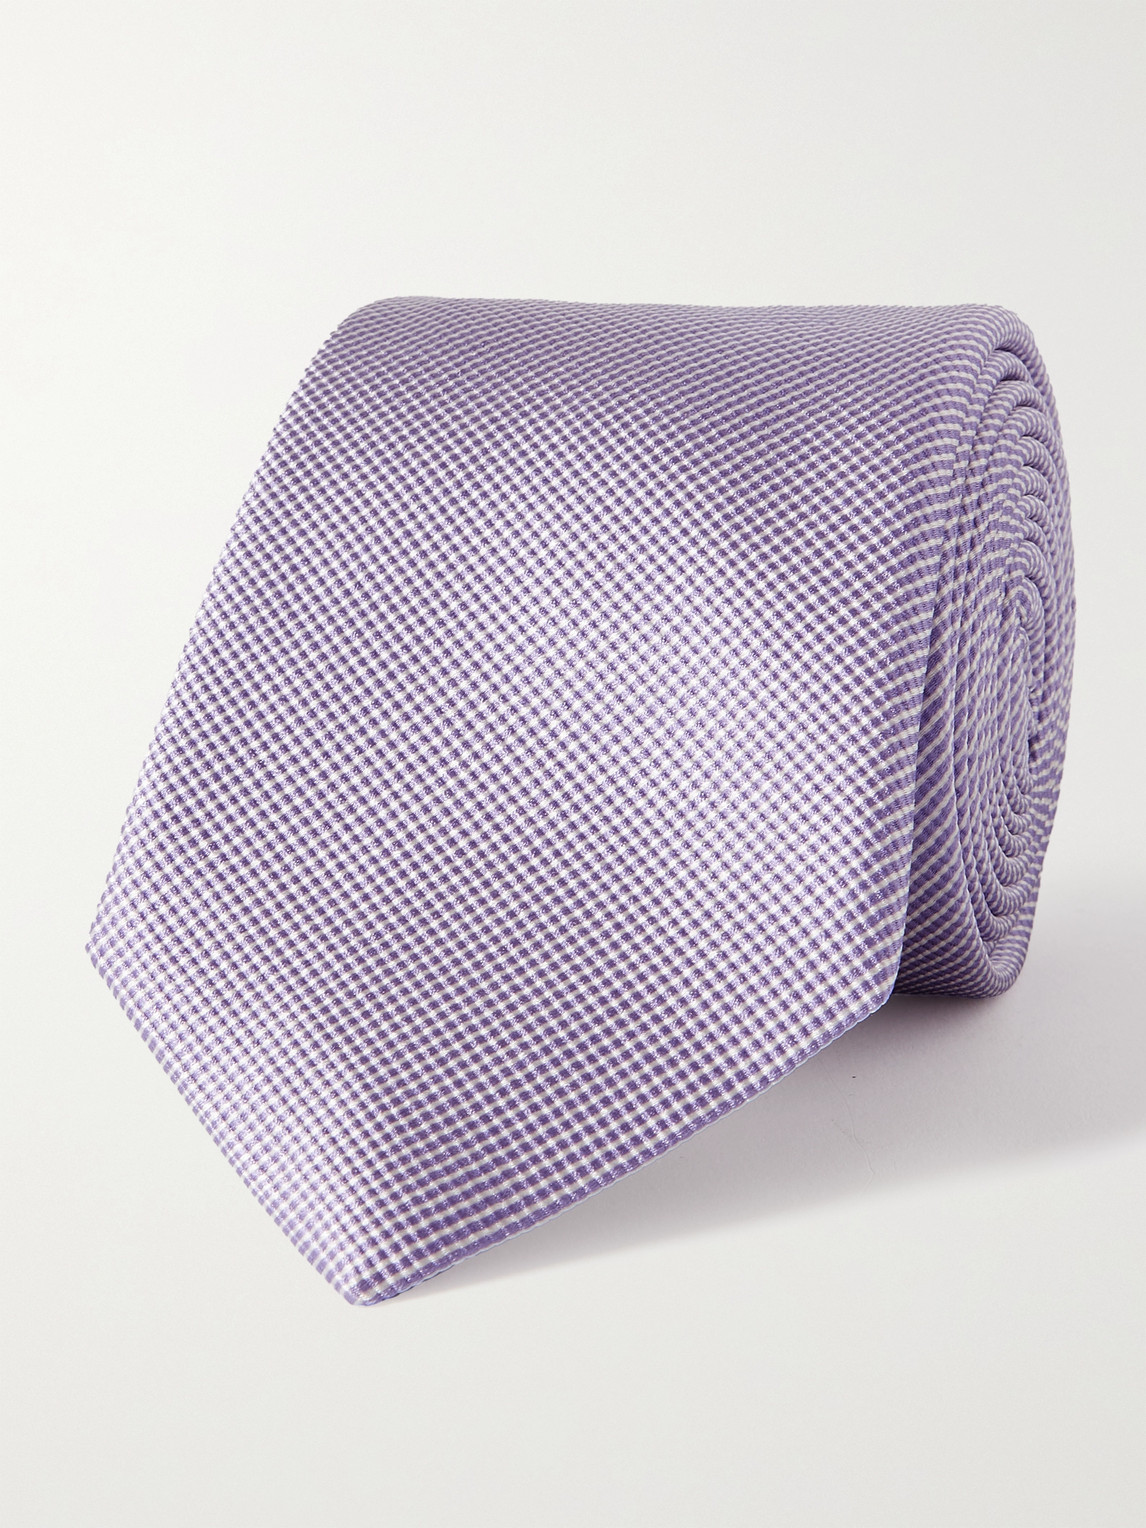 Giorgio Armani 8cm Striped Silk And Cotton-blend Tie In Purple